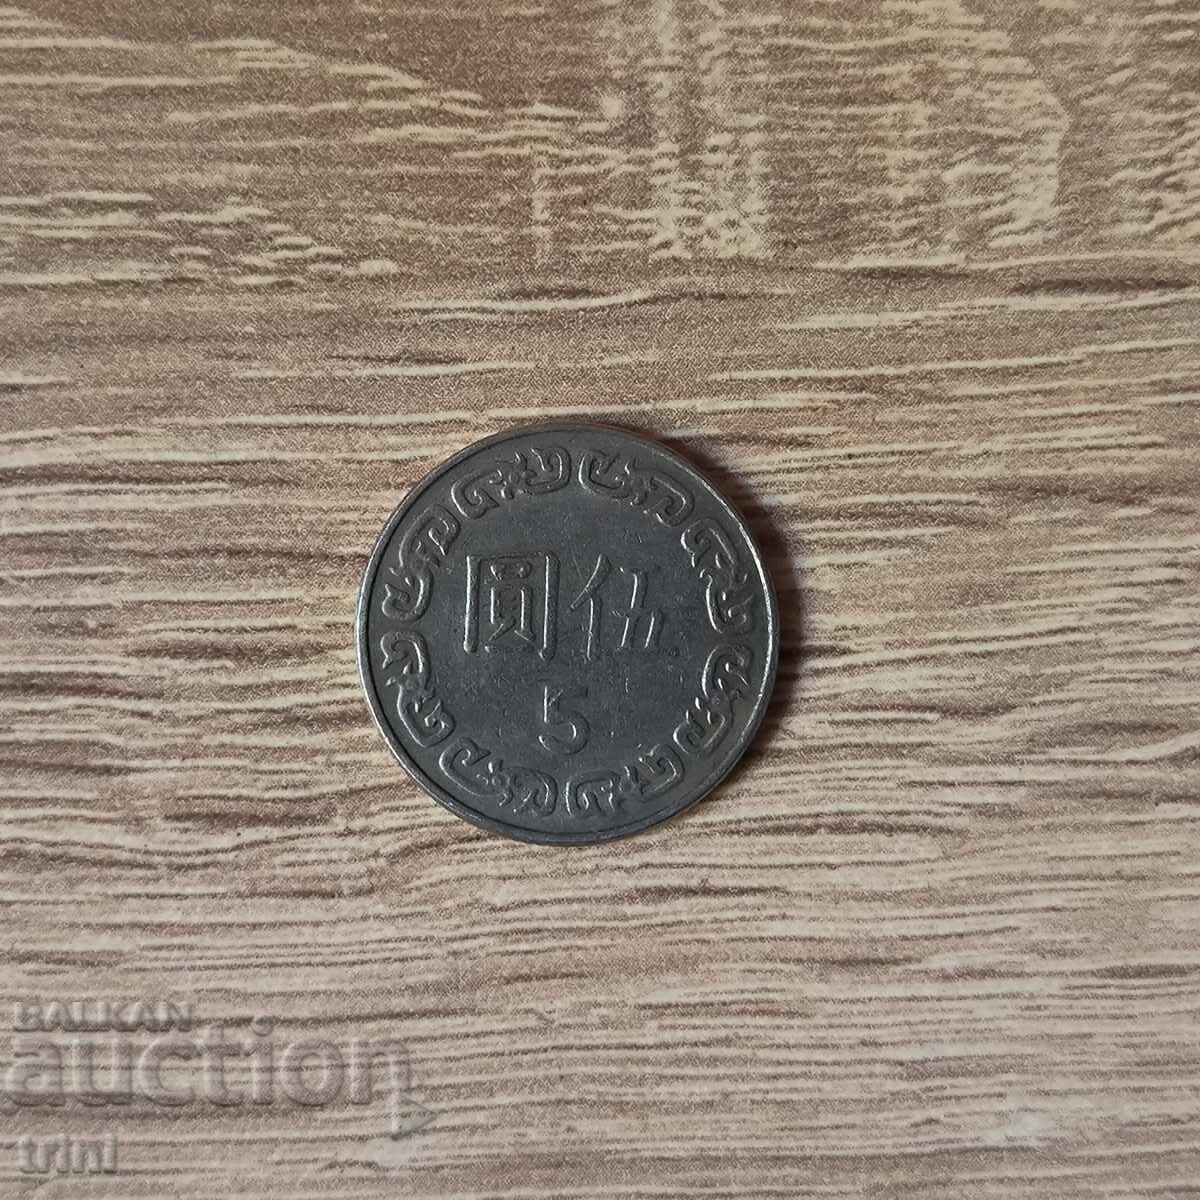 Taiwan 5 dollars 1982